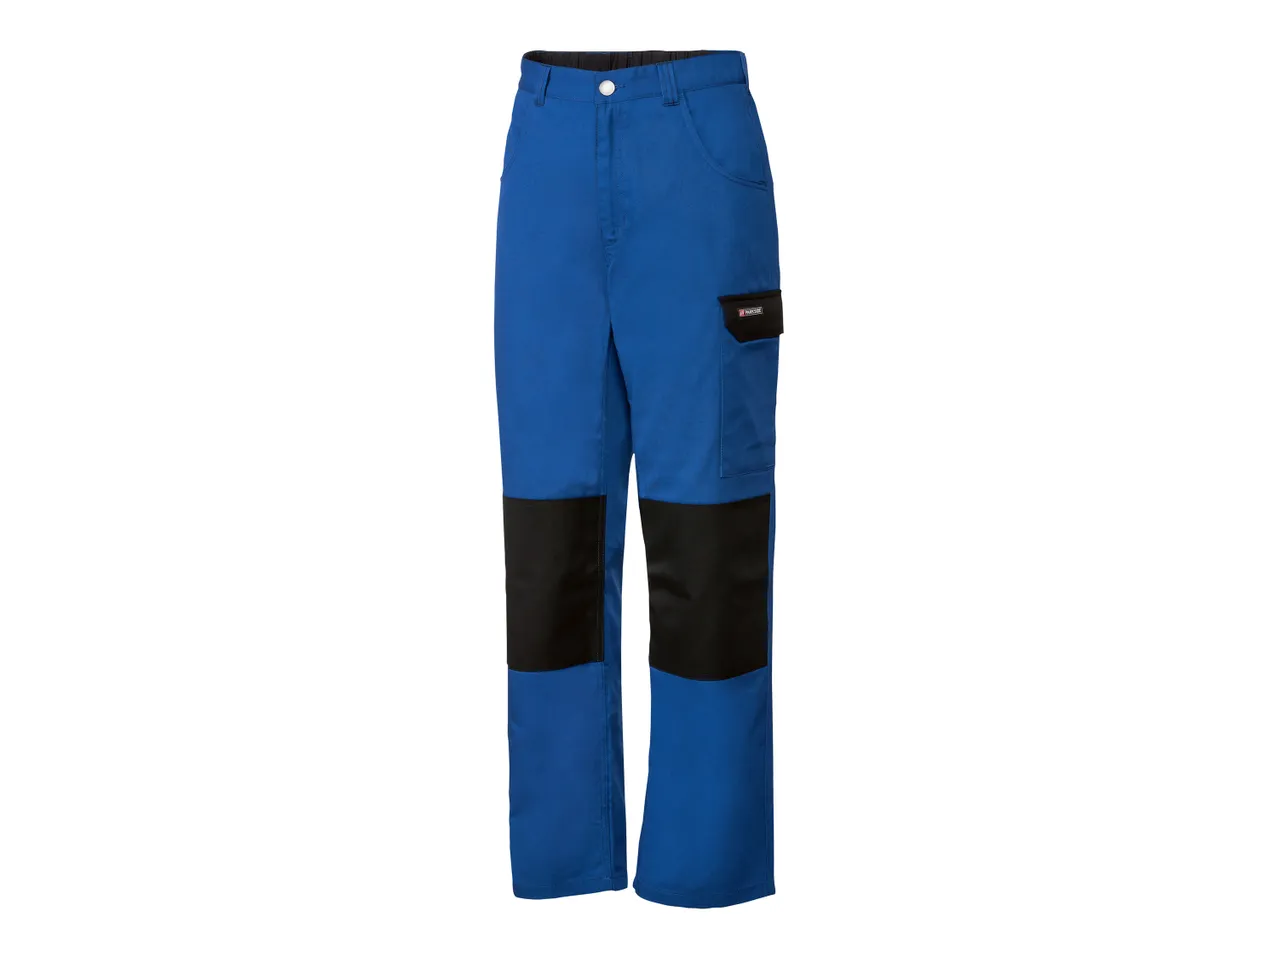 Pantaloni da lavoro per uomo , prezzo 11.99 EUR